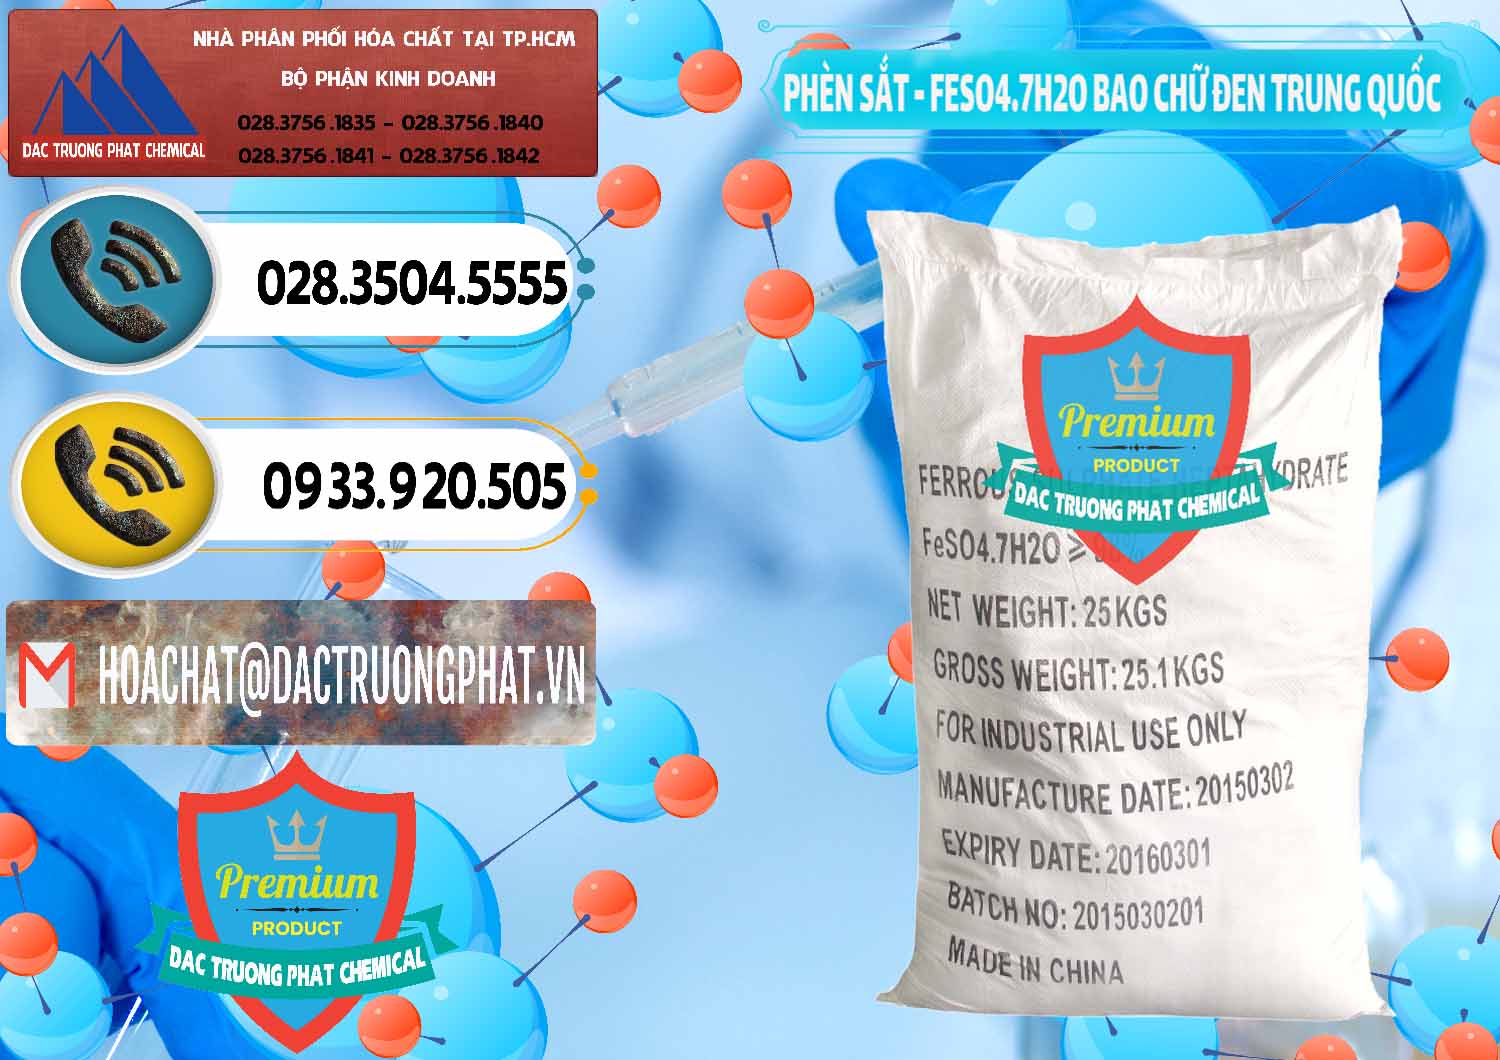 Công ty chuyên bán & phân phối Phèn Sắt - FeSO4.7H2O Bao Chữ Đen Trung Quốc China - 0234 - Chuyên nhập khẩu _ phân phối hóa chất tại TP.HCM - hoachatdetnhuom.vn